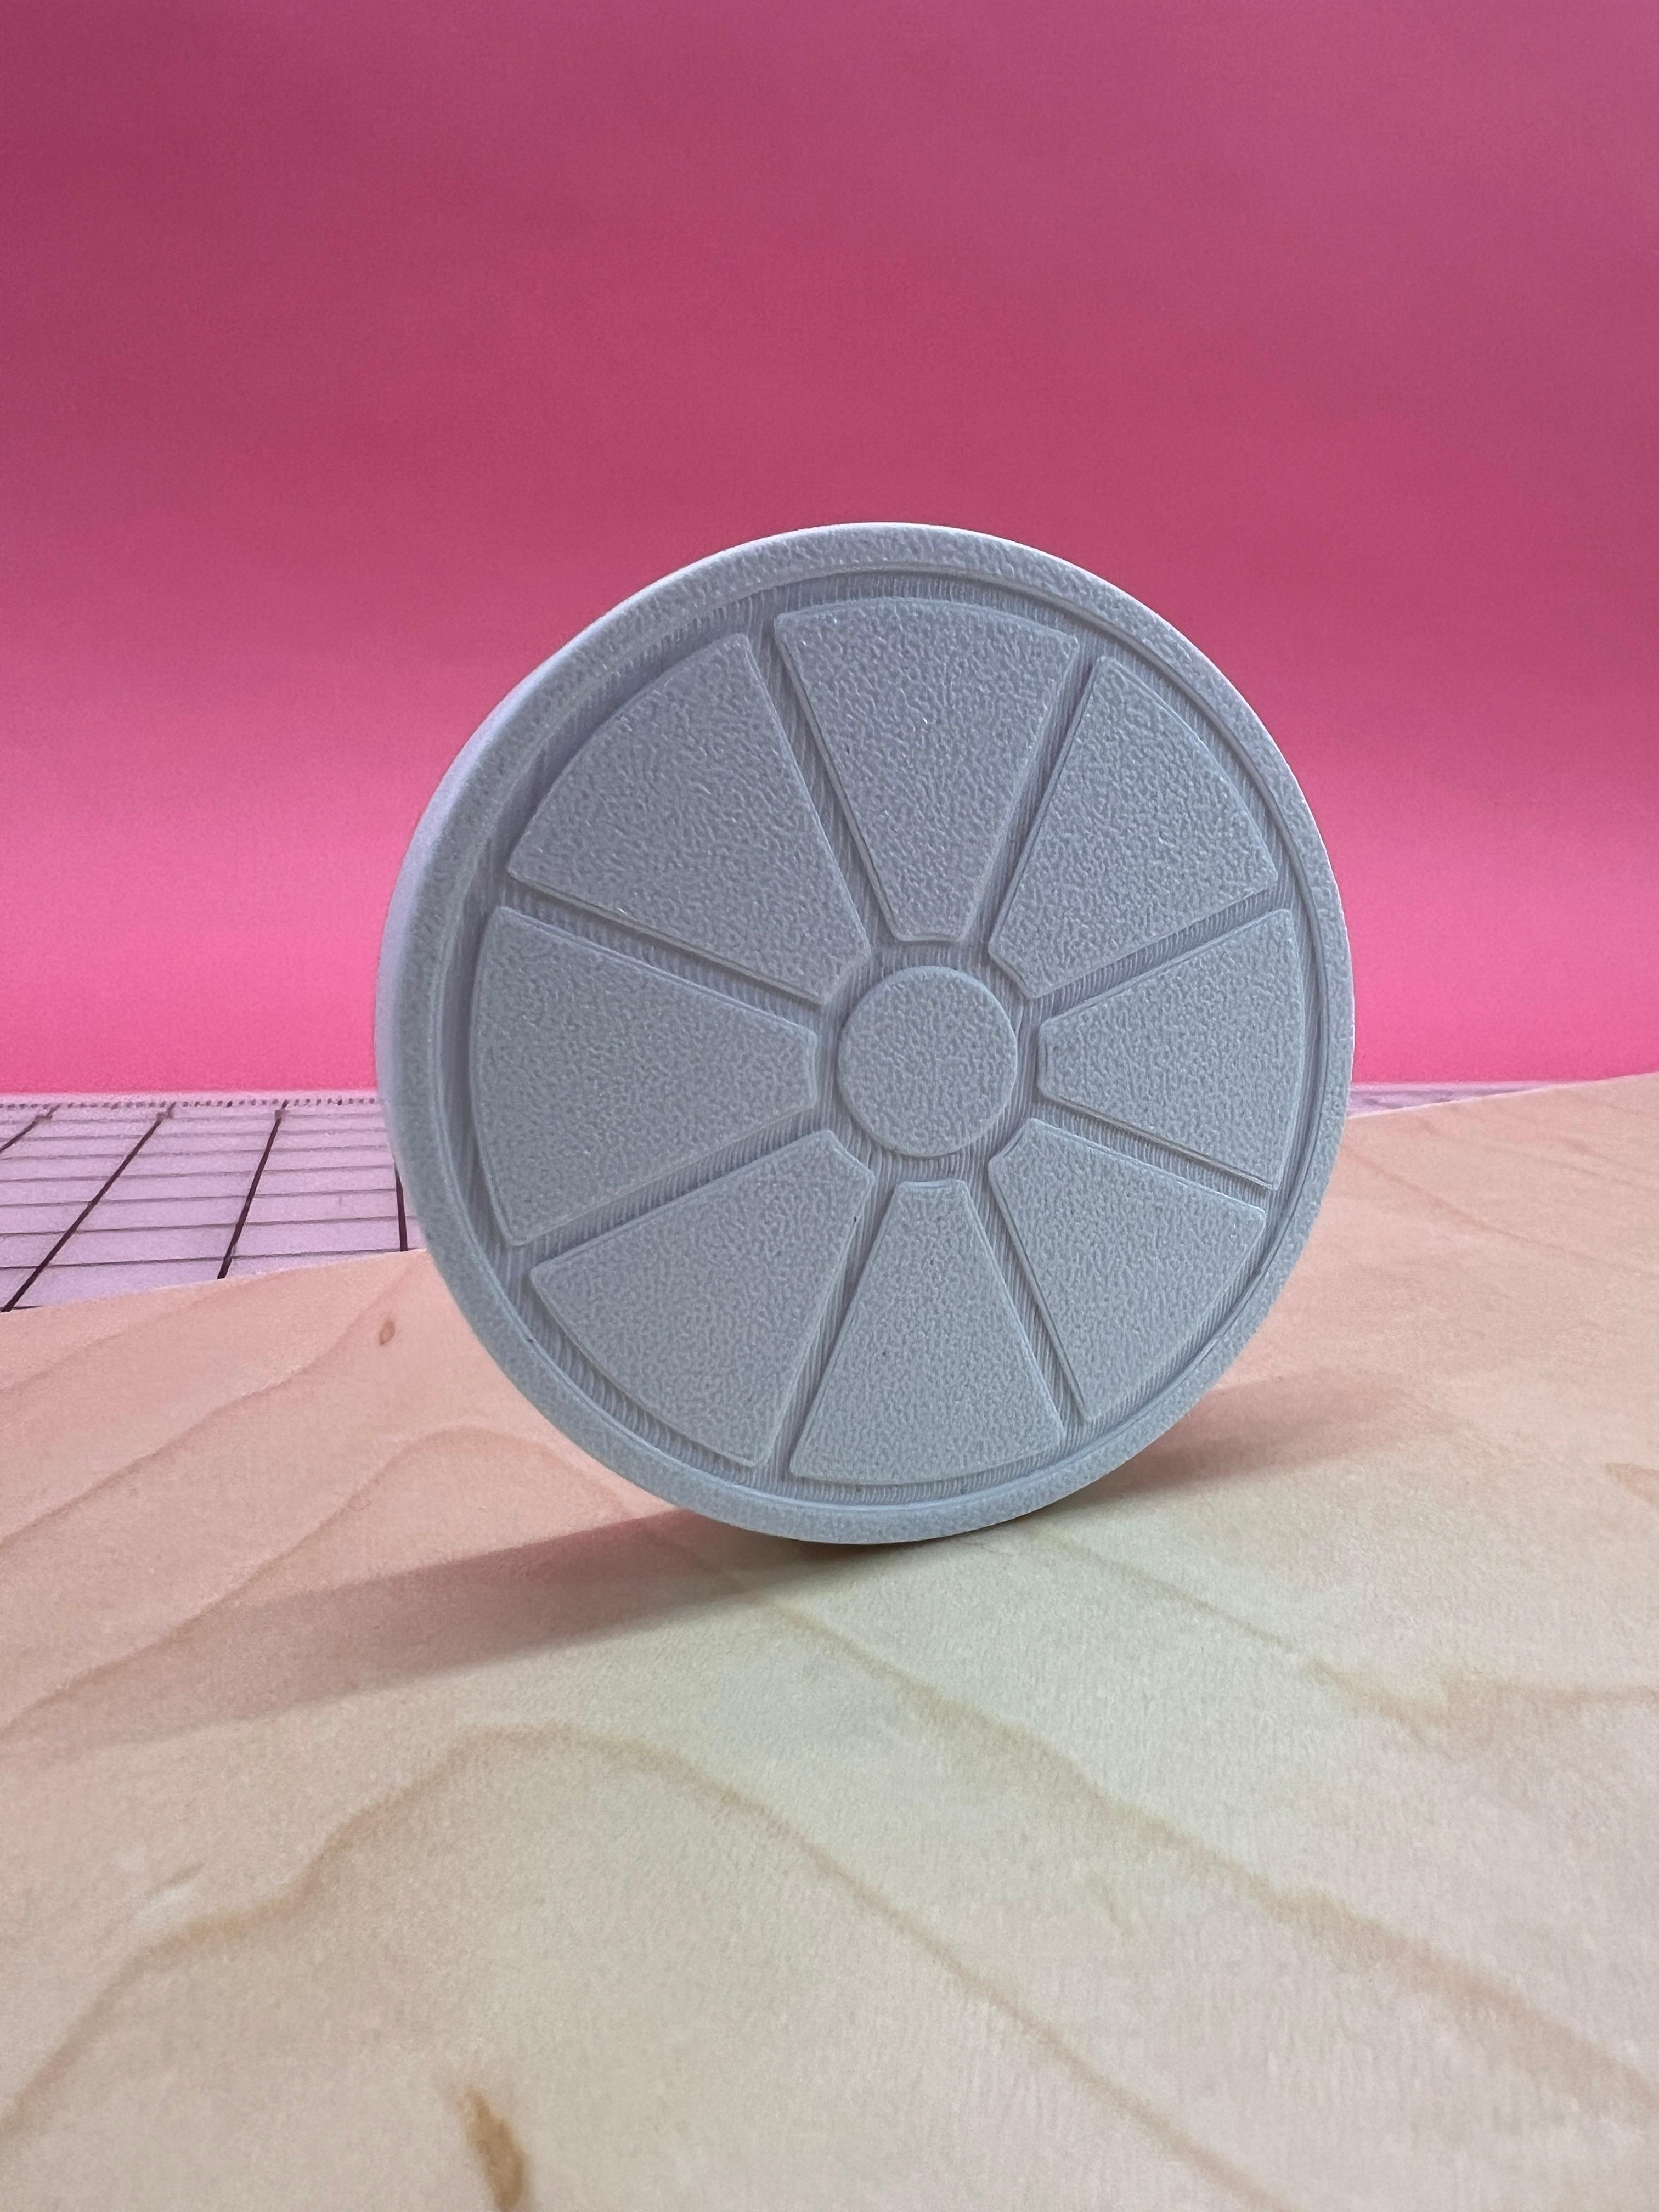 Eccentric Wheel Physics Illusion 3d model